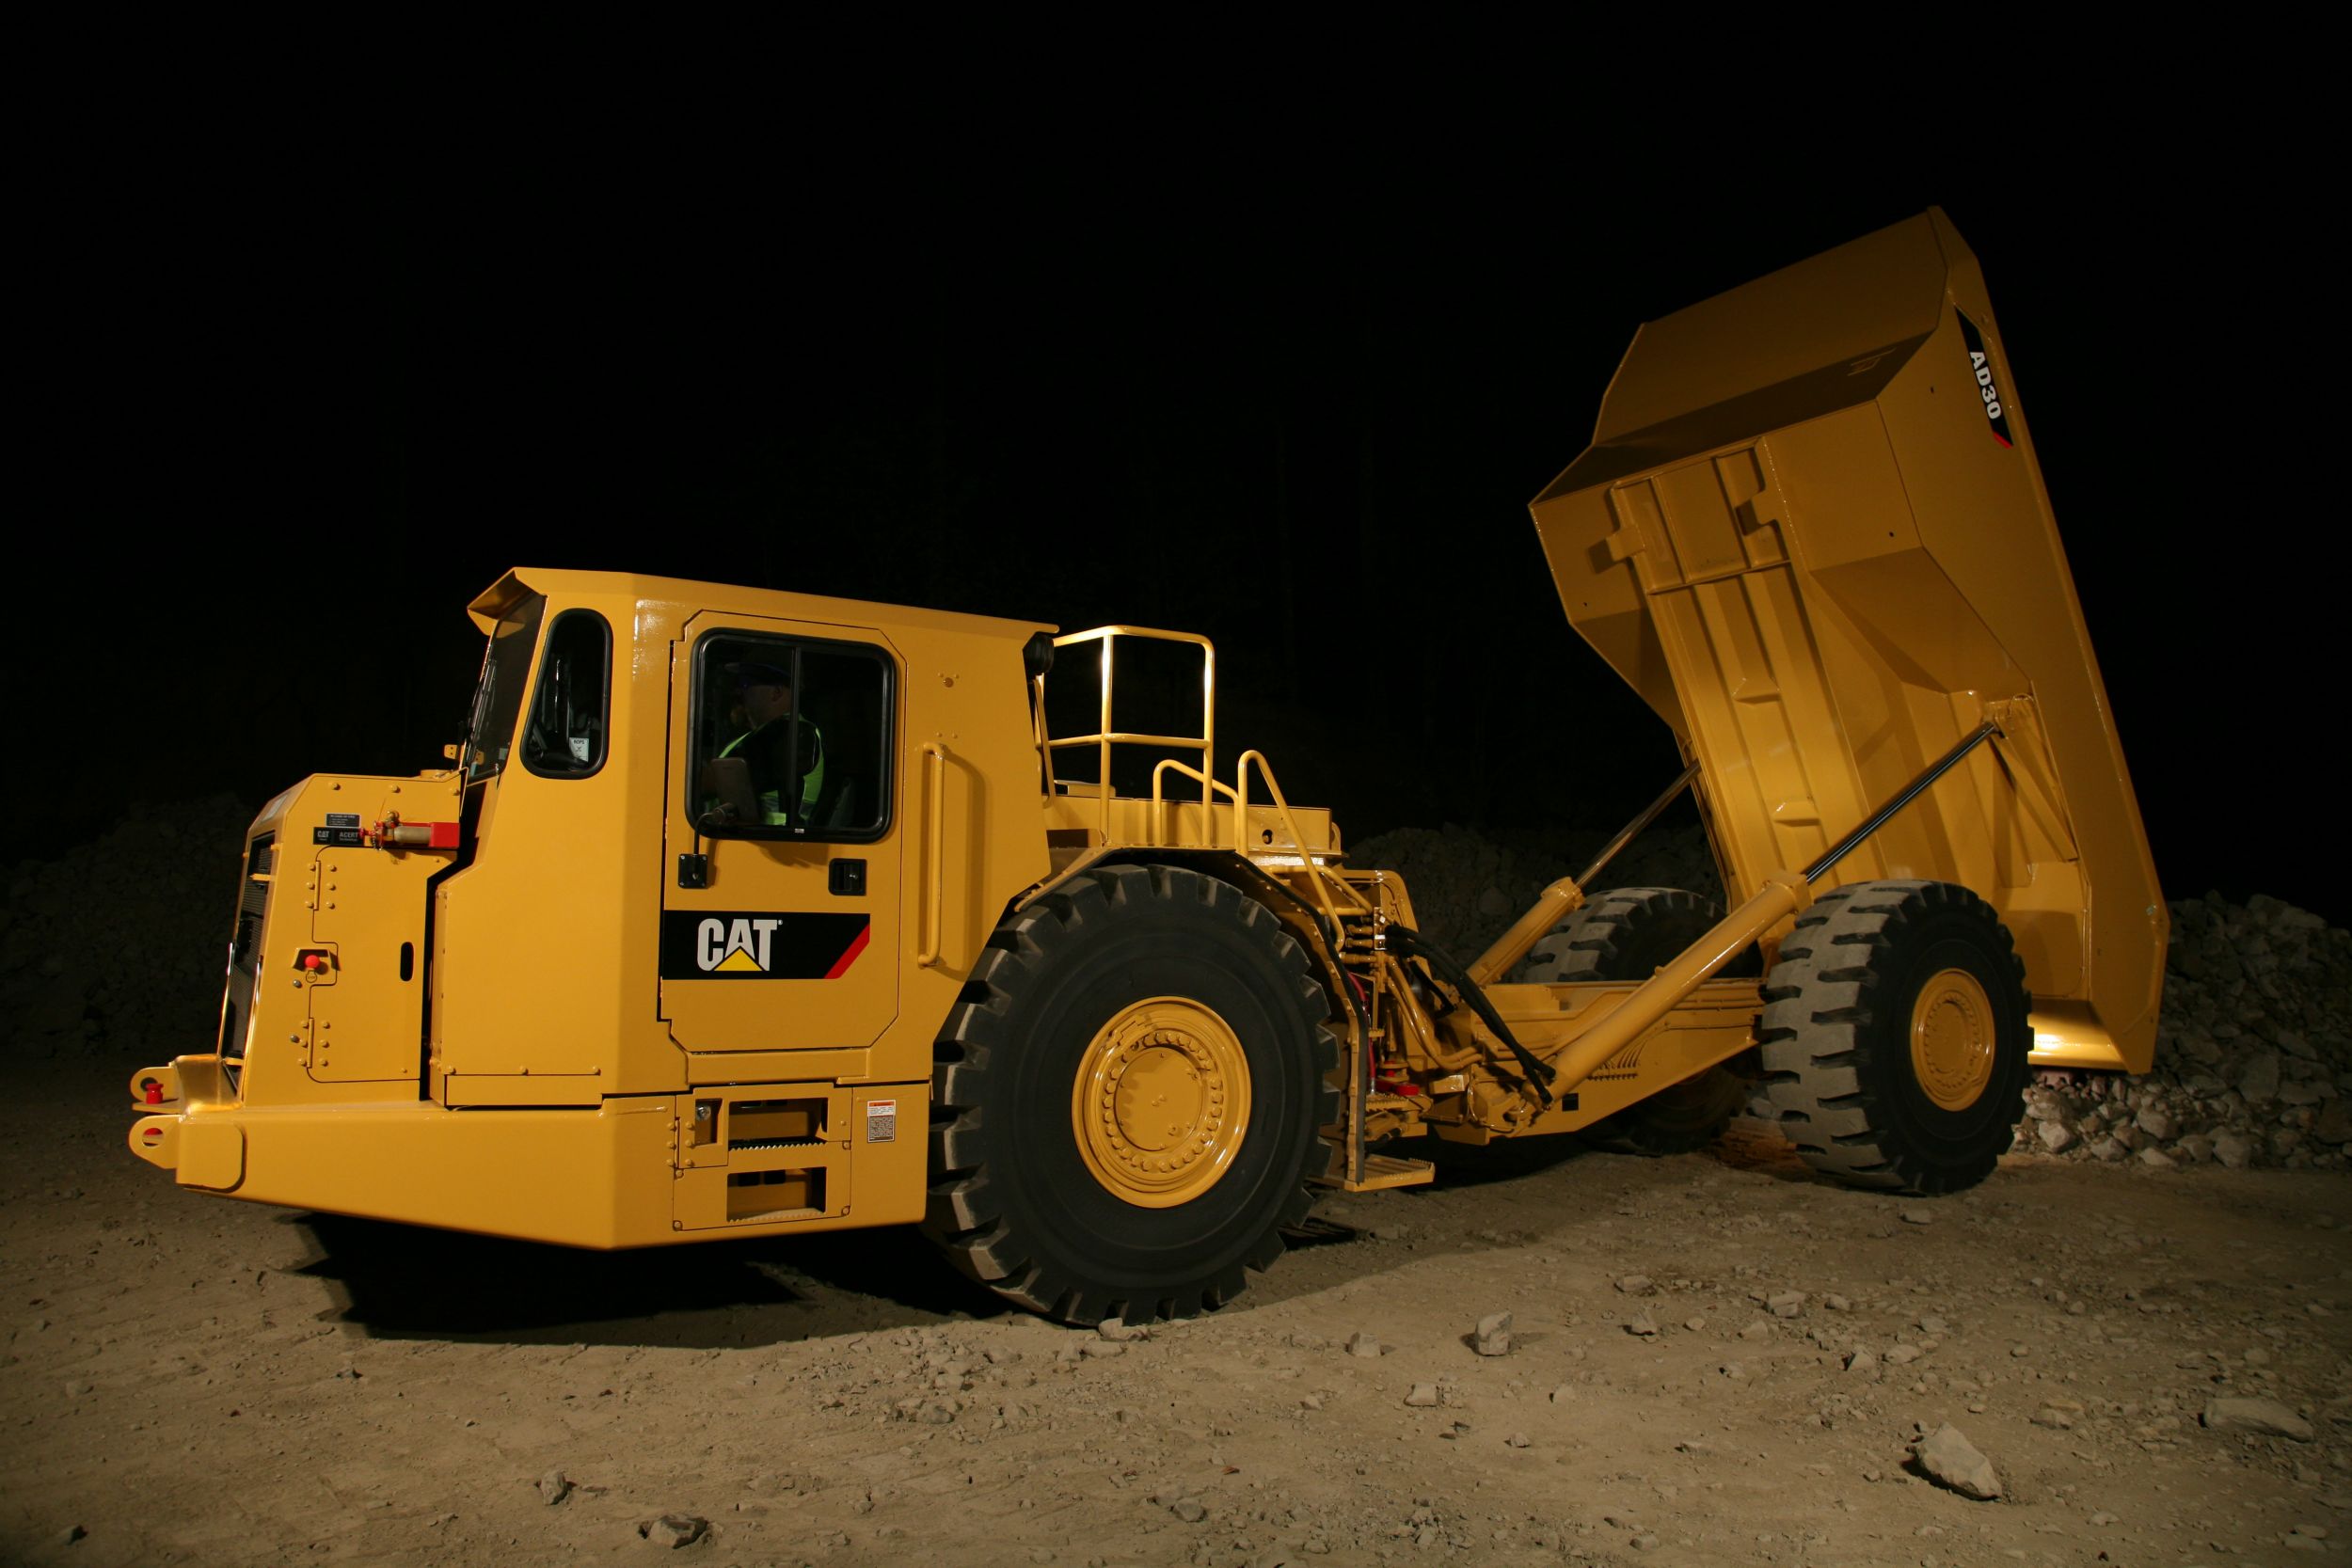 AD30 Underground Mining Truck>